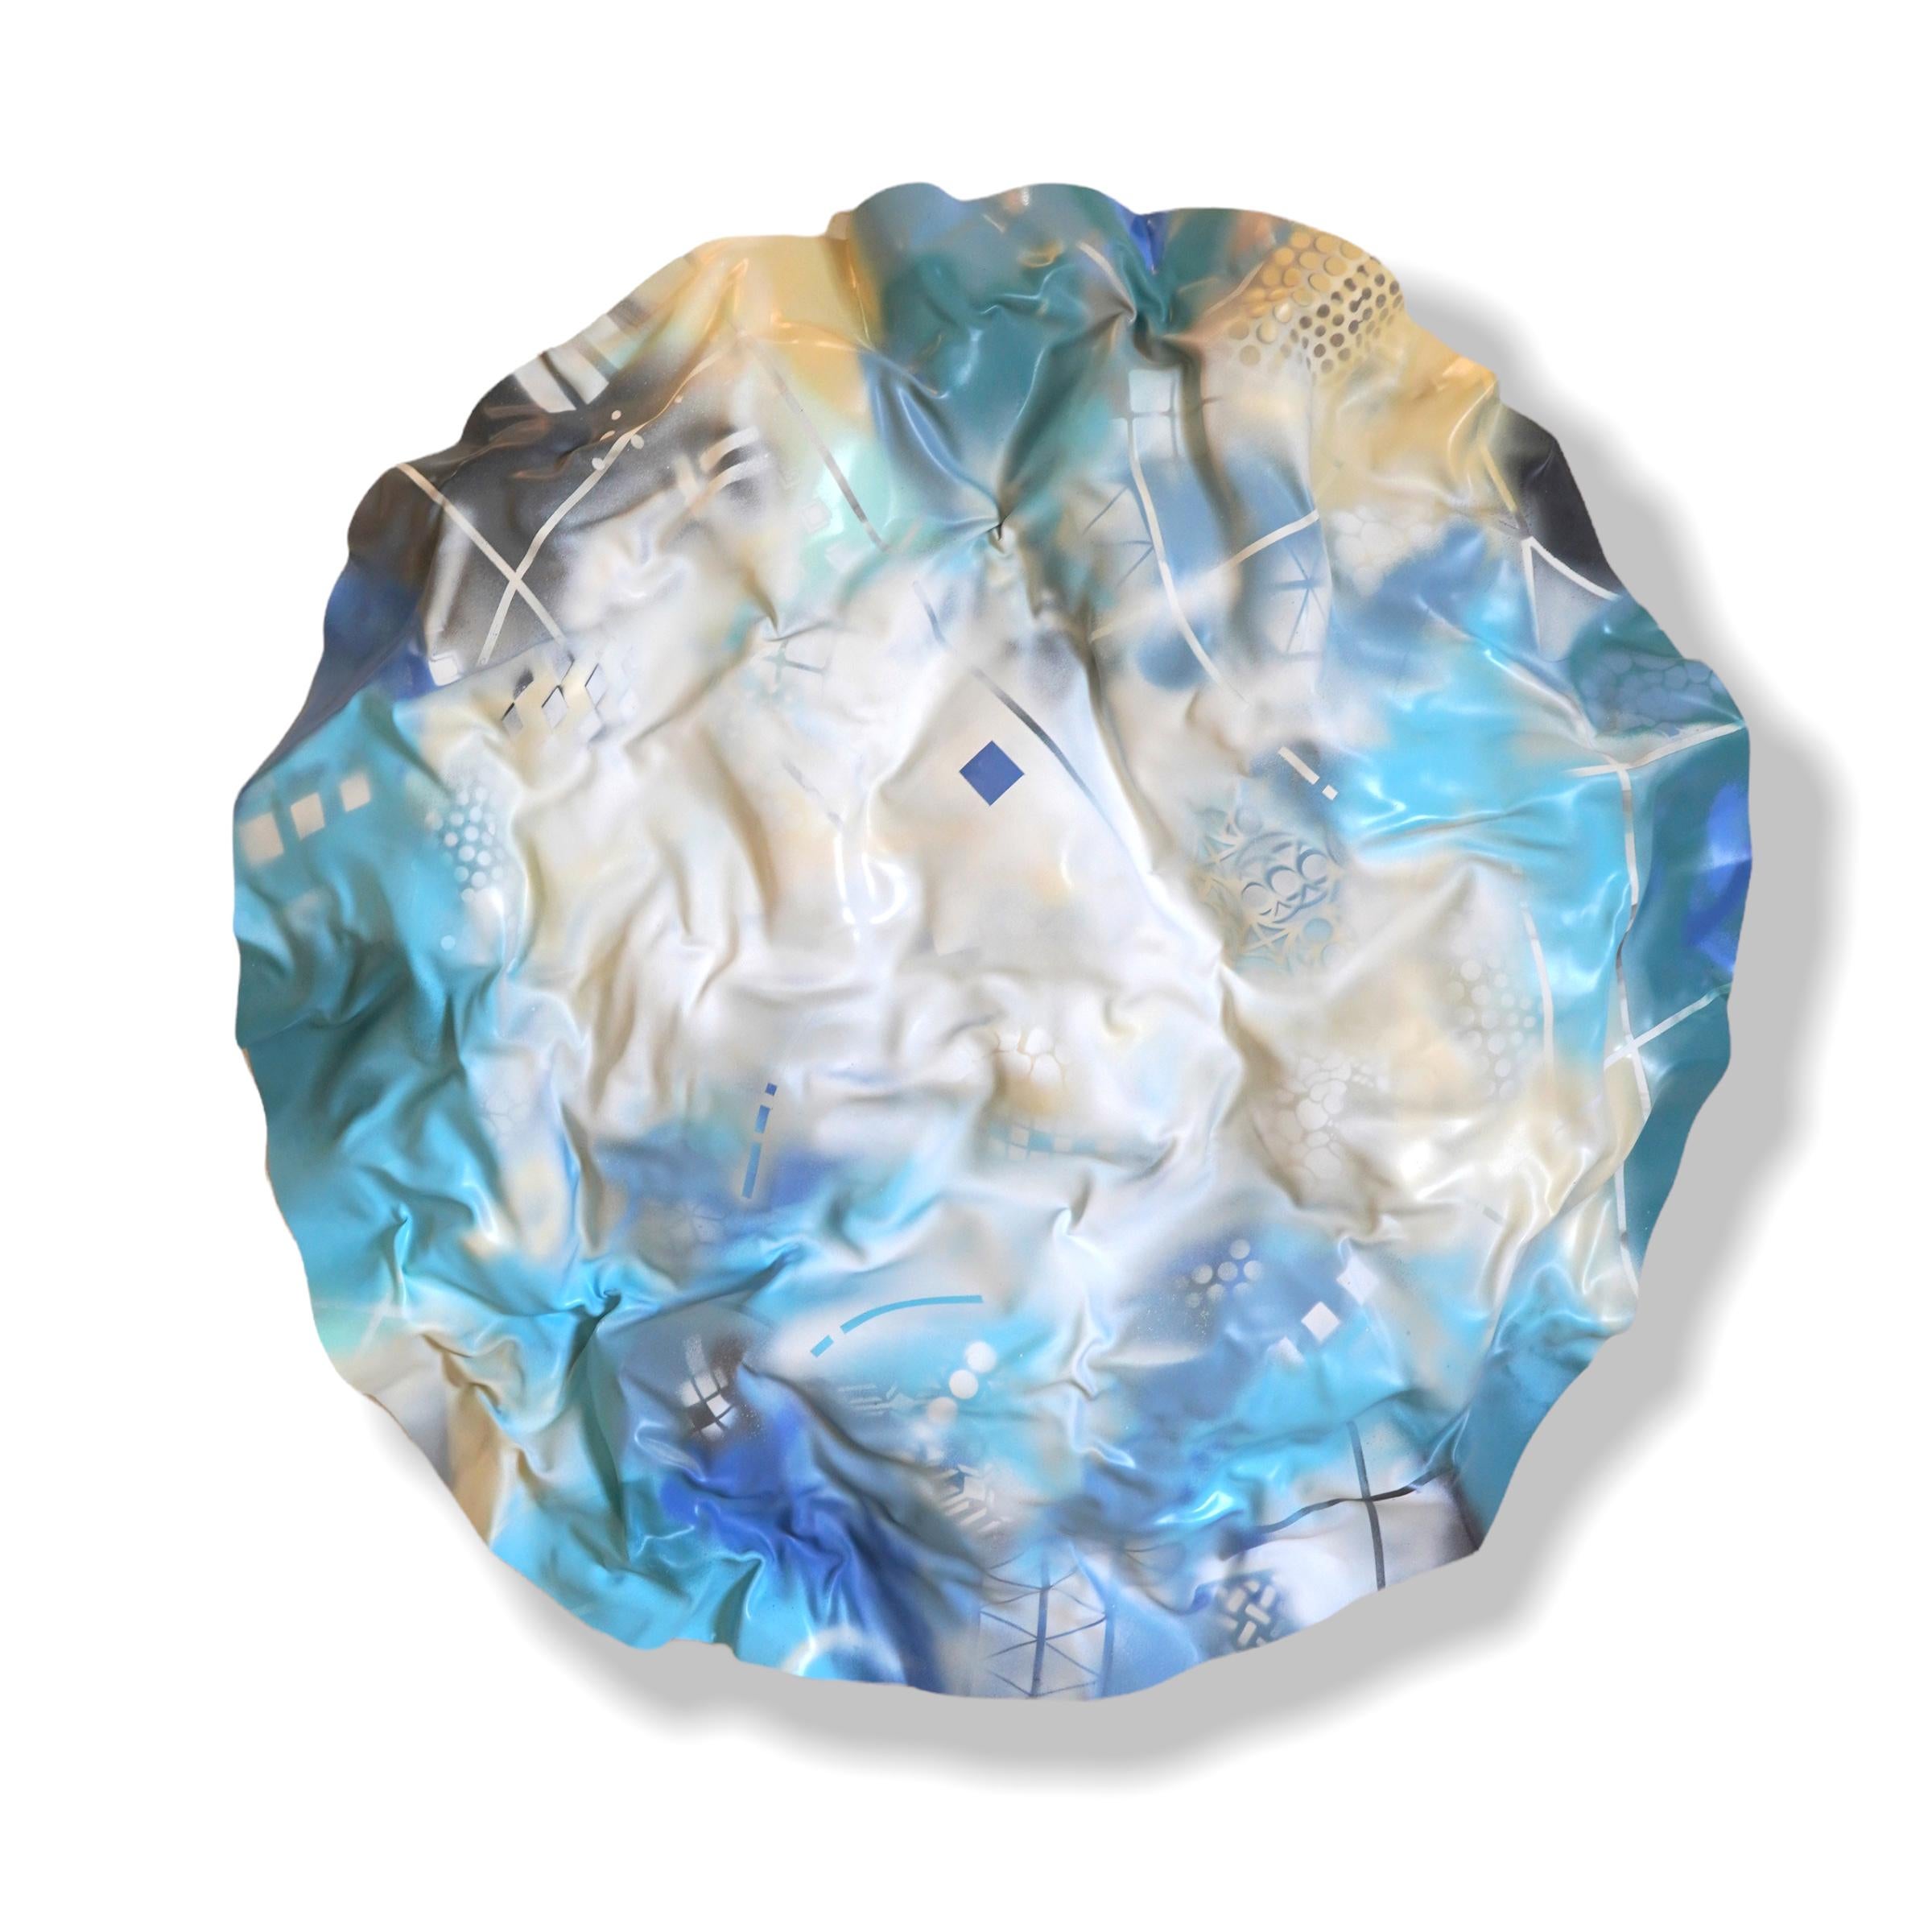 Waves bleues d'Infini. Sculpture murale abstraite, géométrique, bleue, en plexiglas rond